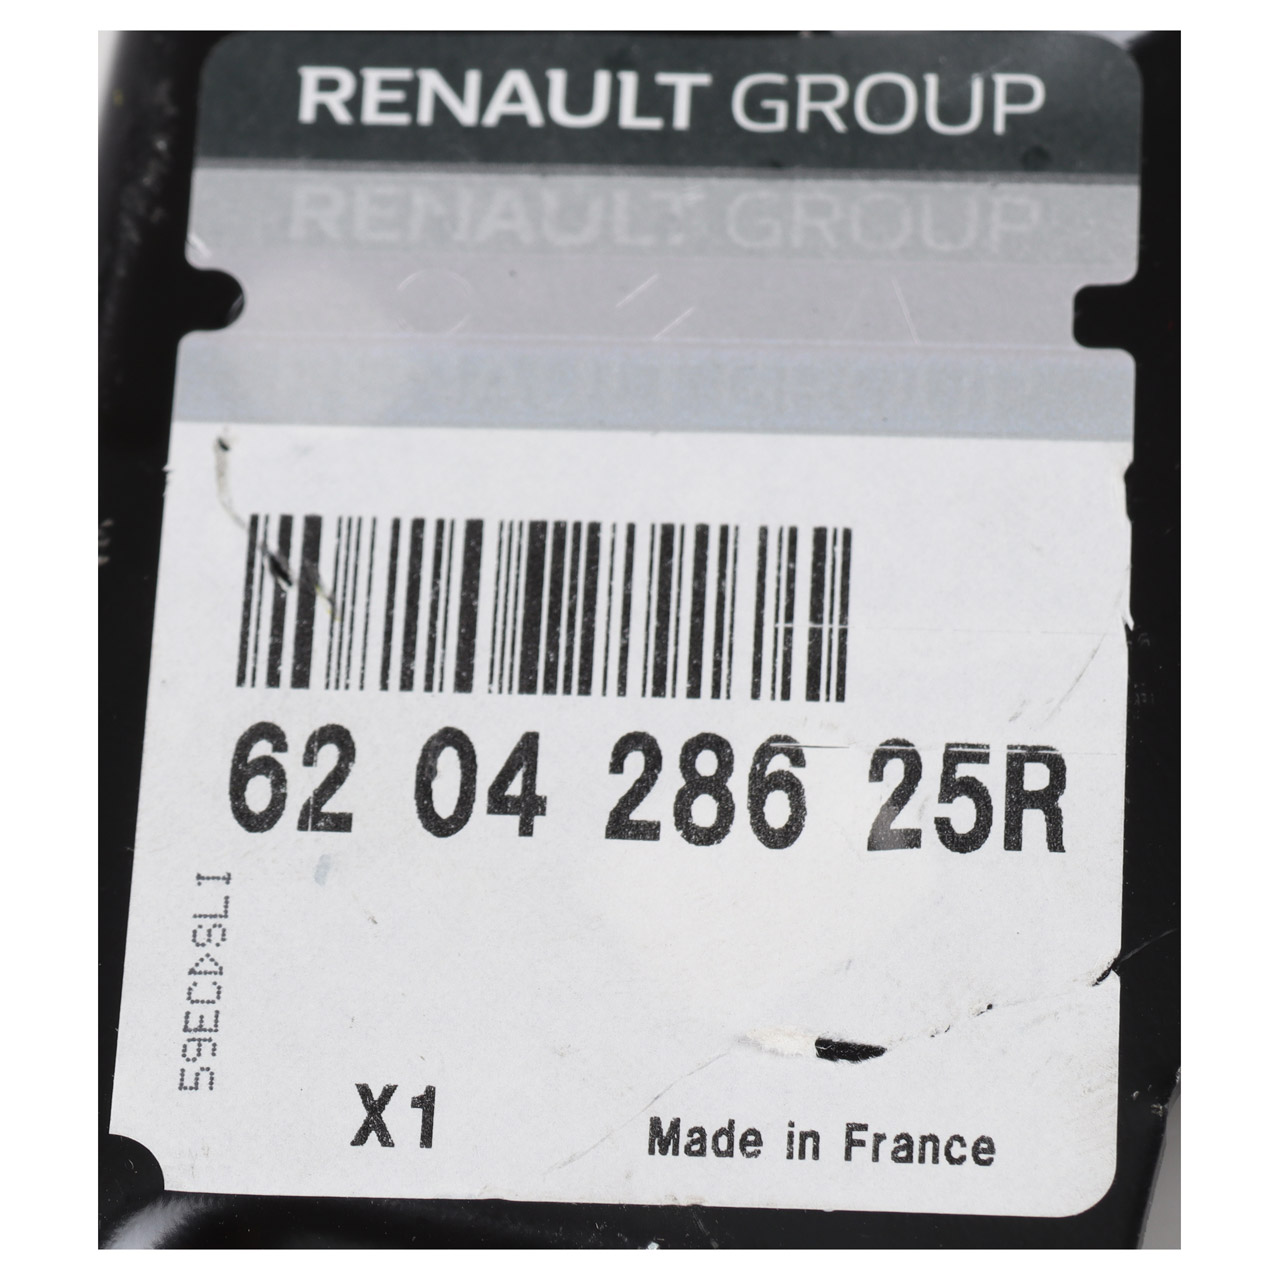 ORIGINAL Renault Kotflügelhalterung Halter Kotflügel Clio 4 vorne unten links 620428625R